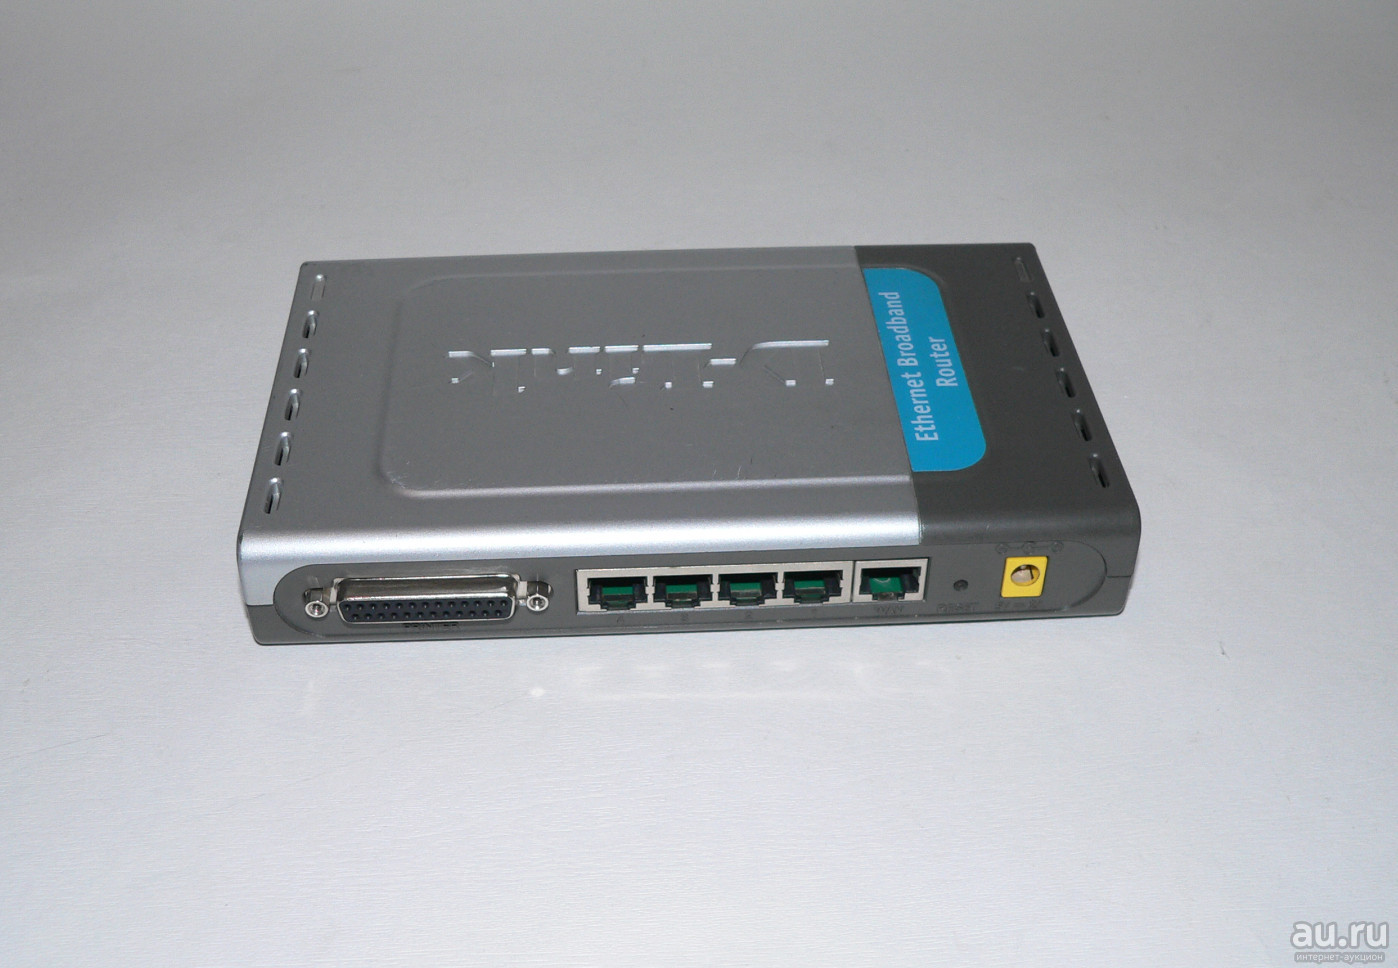 DI-704P Интернет-шлюз + принт-сервер, 4x10/100Mbps LAN, 1xWAN, 1xLPT